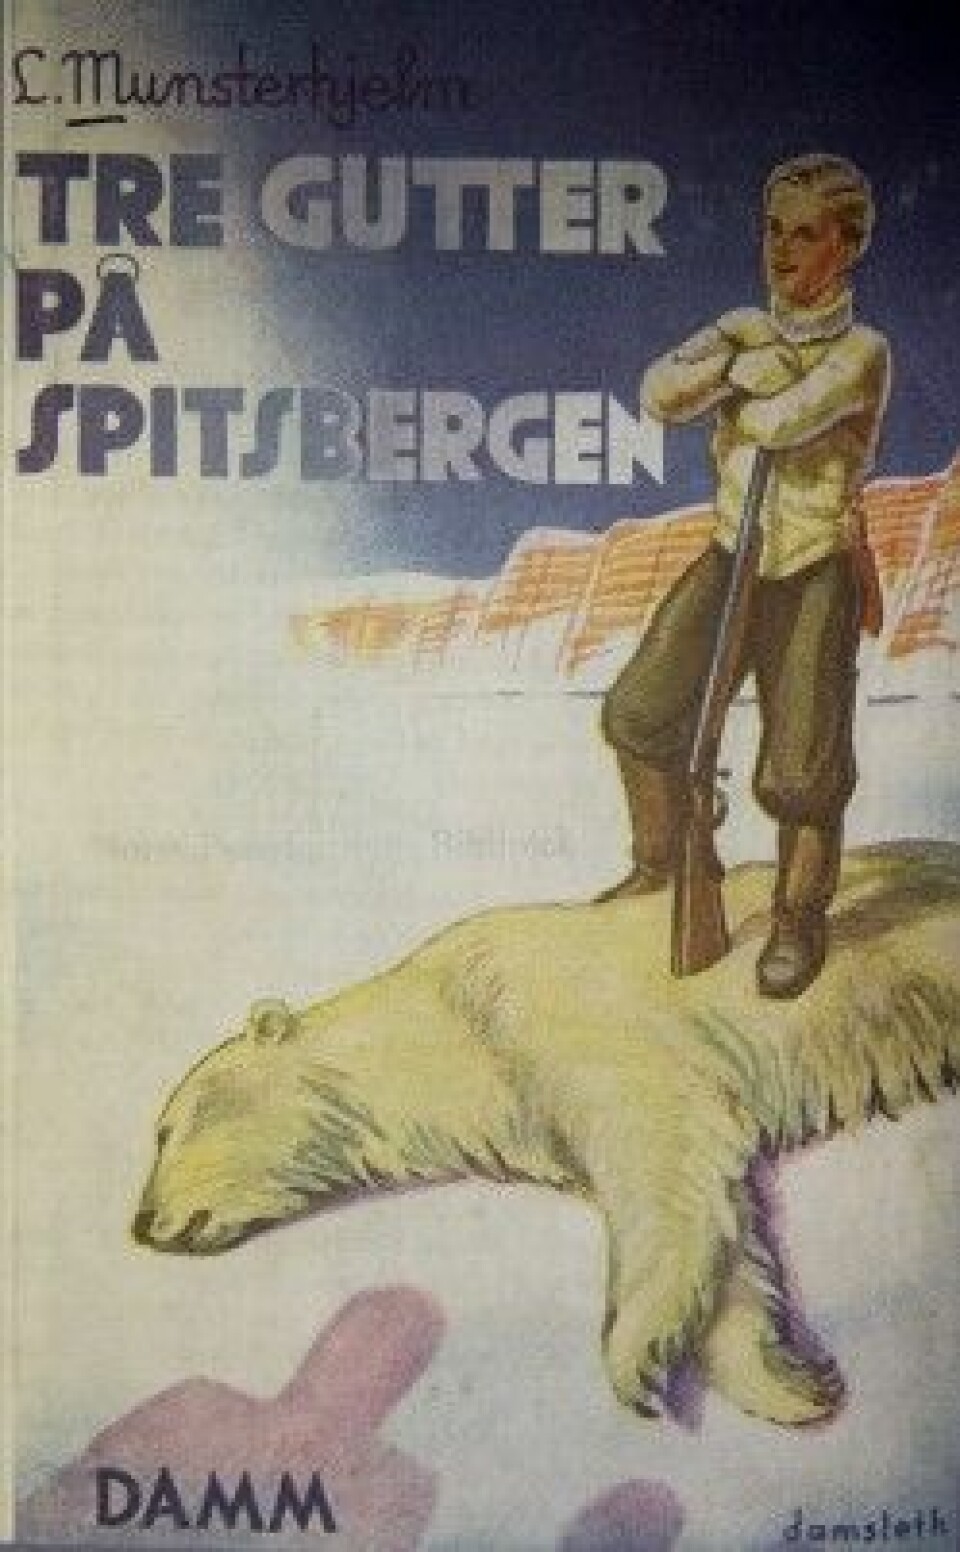 I mellomkrigstiden dukker isbjørnjakt opp som en manndomsprøve i arktisk ungdomslitteratur, som her i boken Tre gutter på Spitsbergen fra 1932. (Foto: Stig Brøndbo)